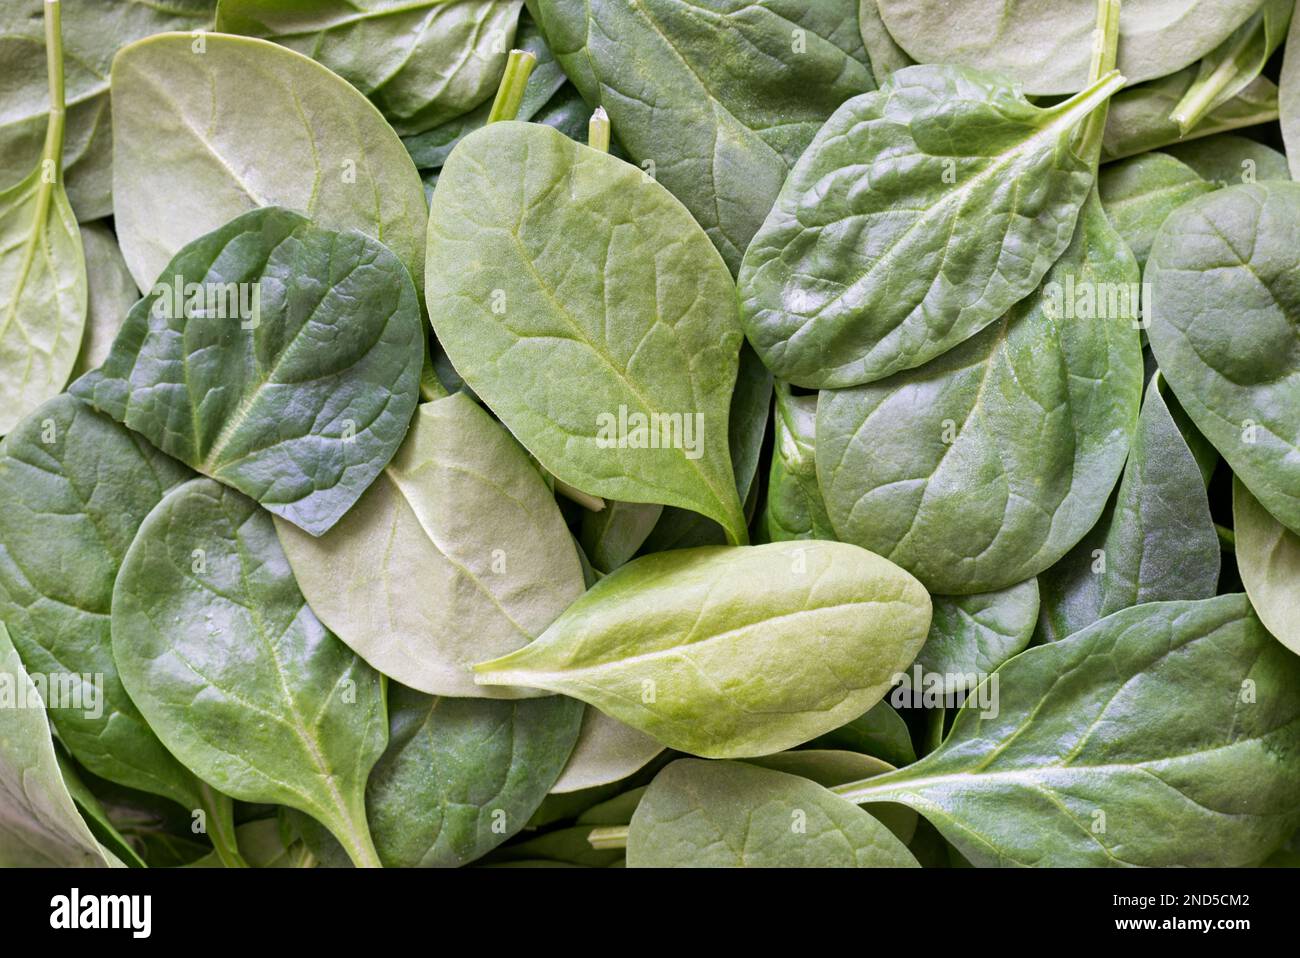 Gli spinaci del bambino lasciano sparsi liberamente. Verdure verdi crude direttamente sopra, immagine full frame. Foto Stock